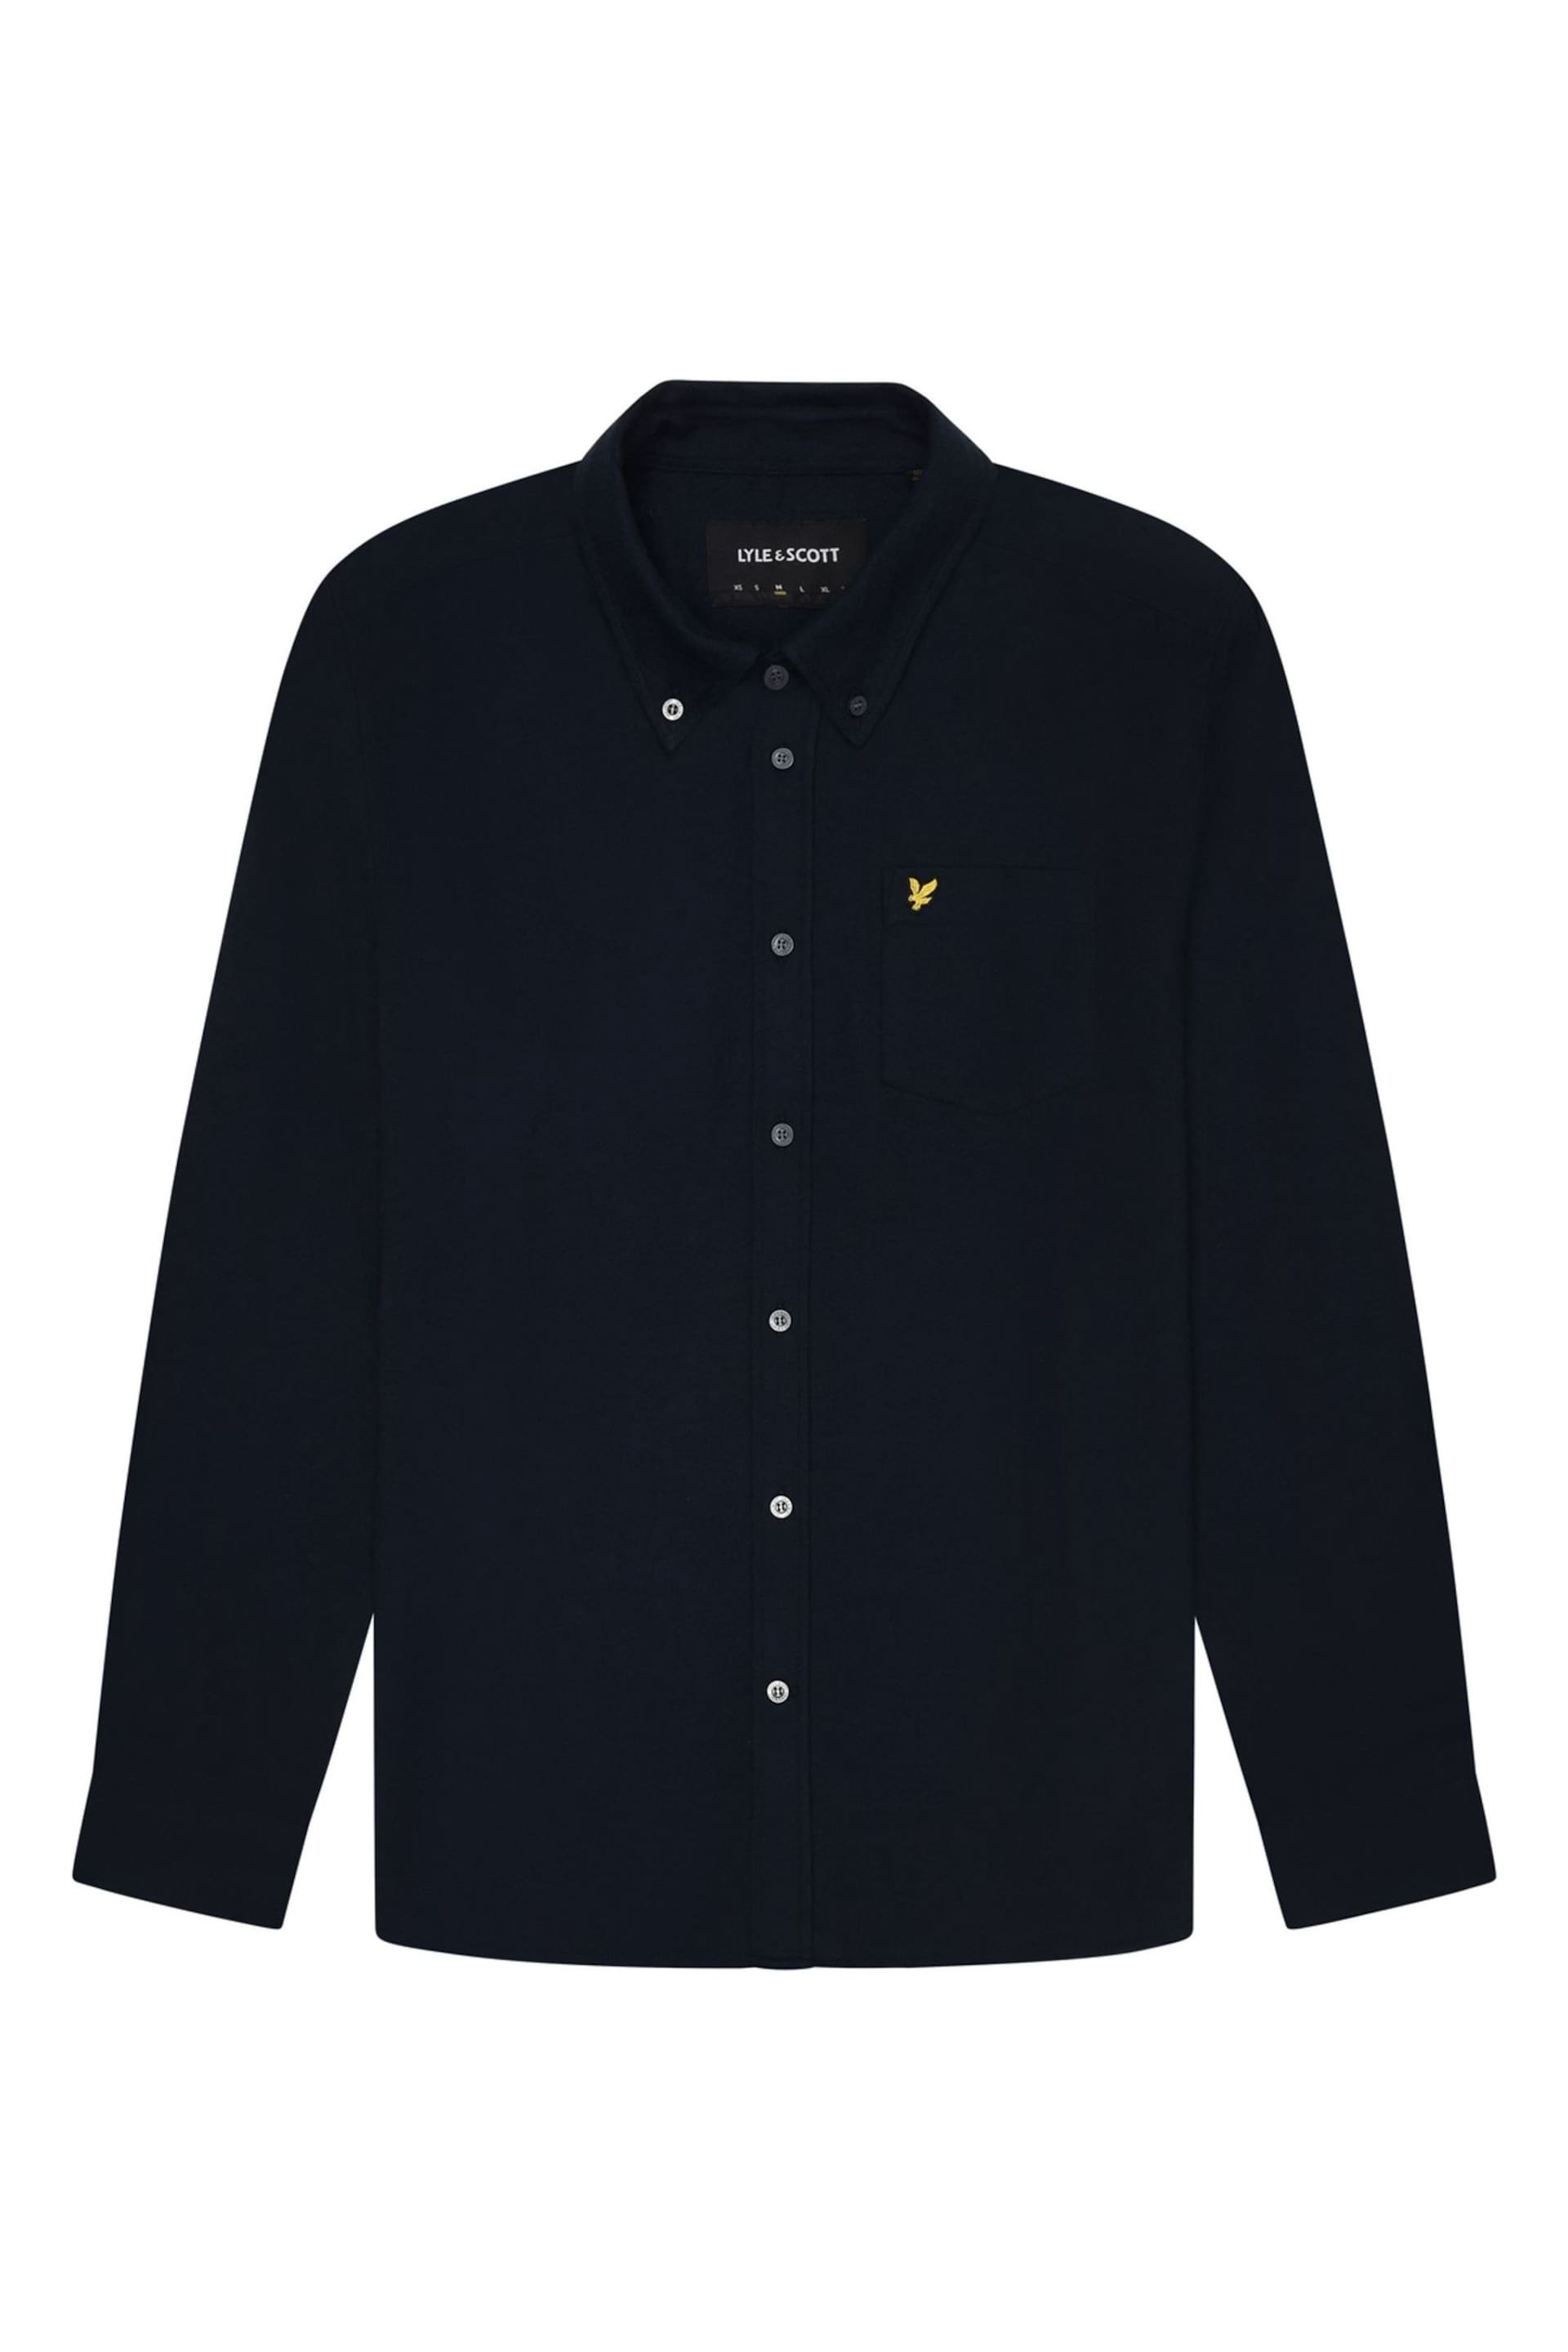 Lyle & Scott Blue Plain Flannel Shirt - Image 9 of 9